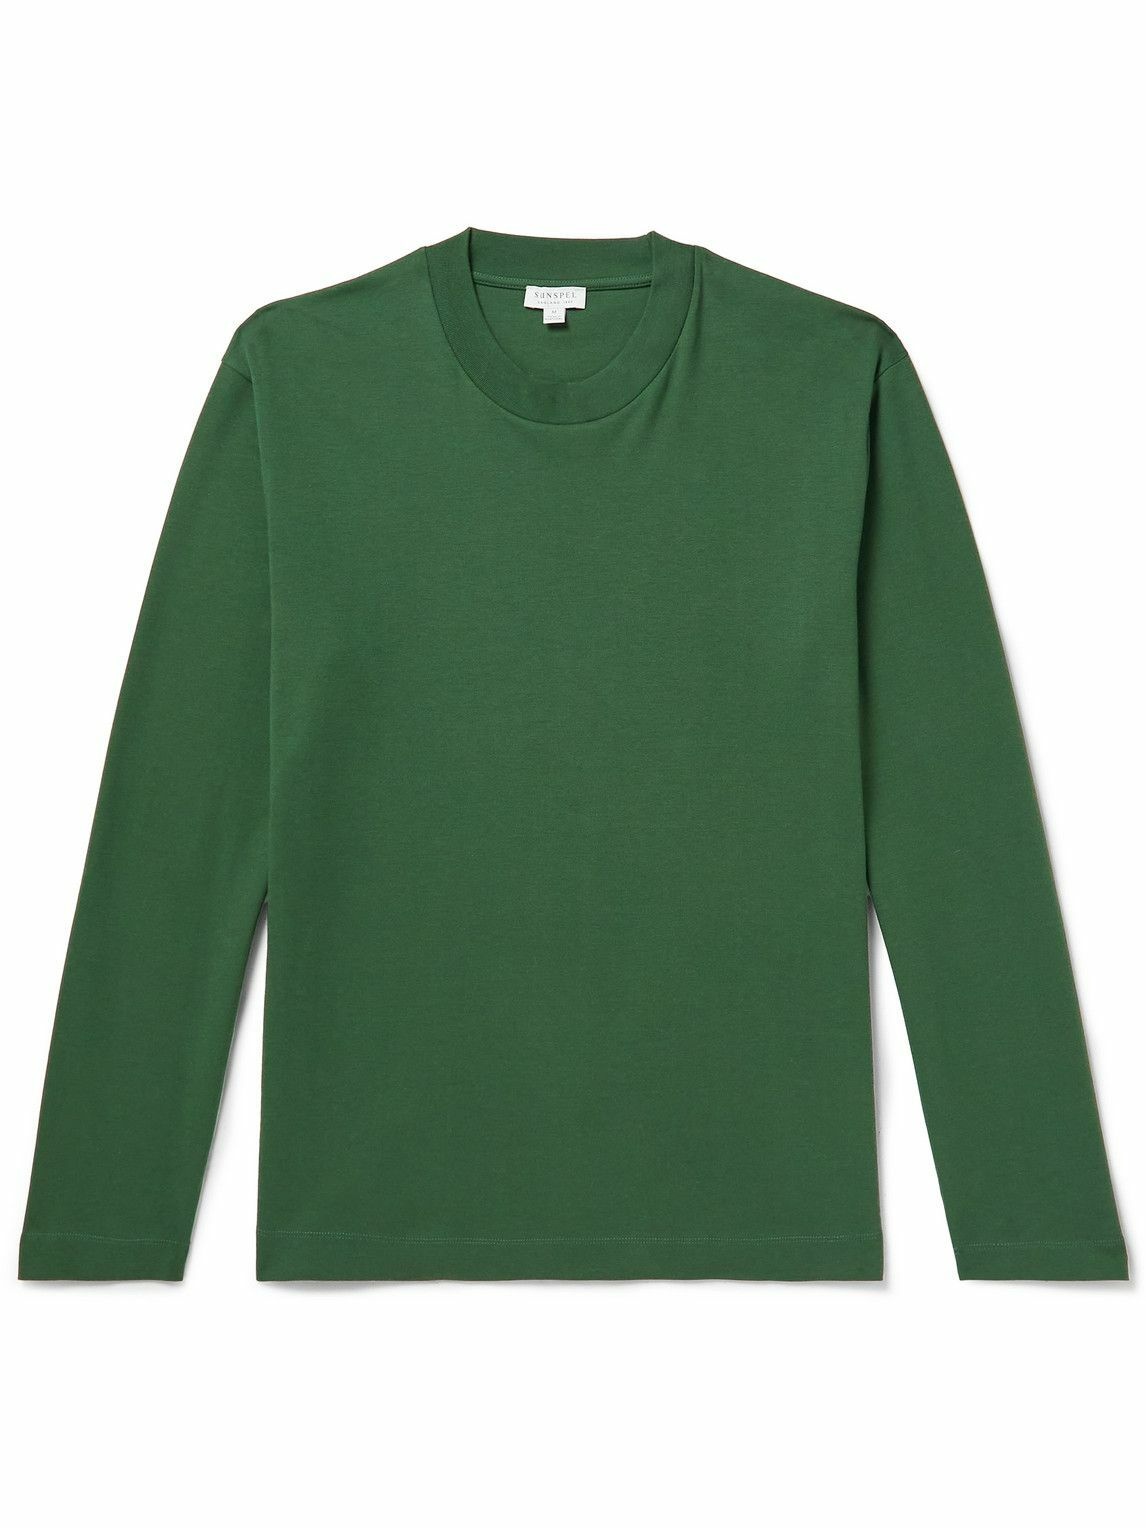 Photo: Sunspel - Cotton-Jersey T-Shirt - Green